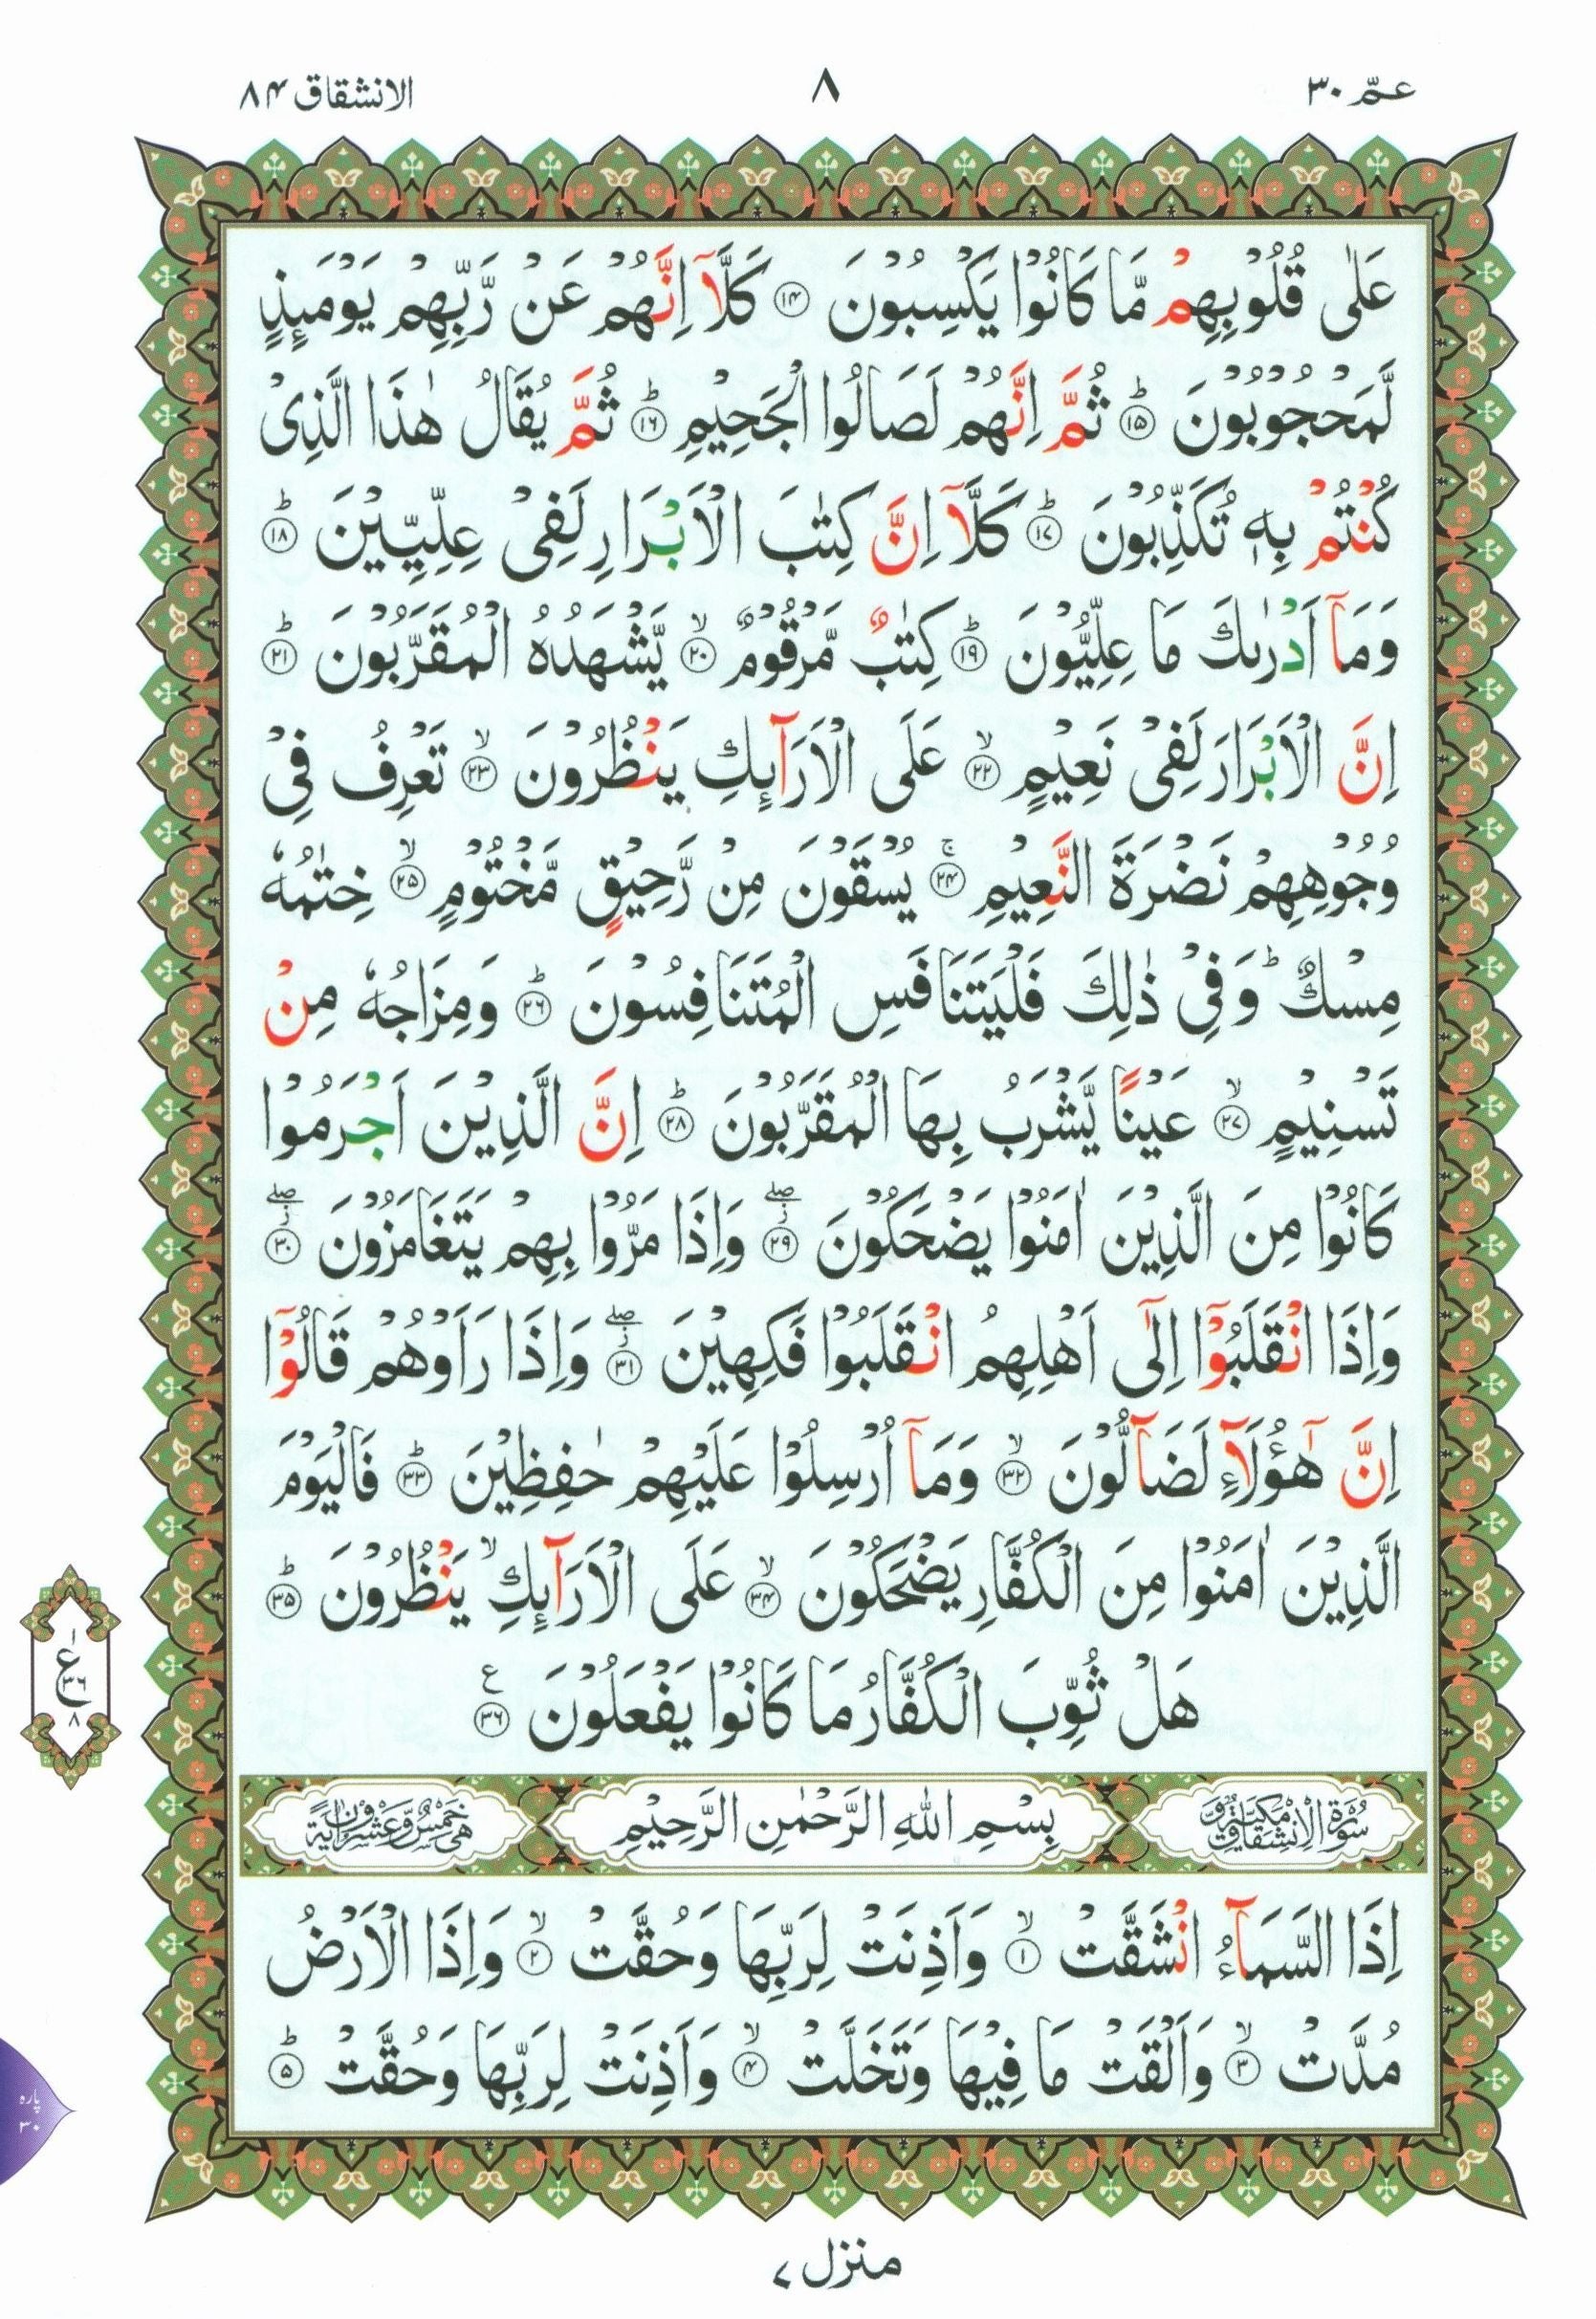 Al-Qaidah An-Noraniah - Juz’ Amma & Suratul-Fatihah for Beginners Small Size 5 x 8 with Urdu Script جزء عم مع سورة الفاتحة للمبتدئين